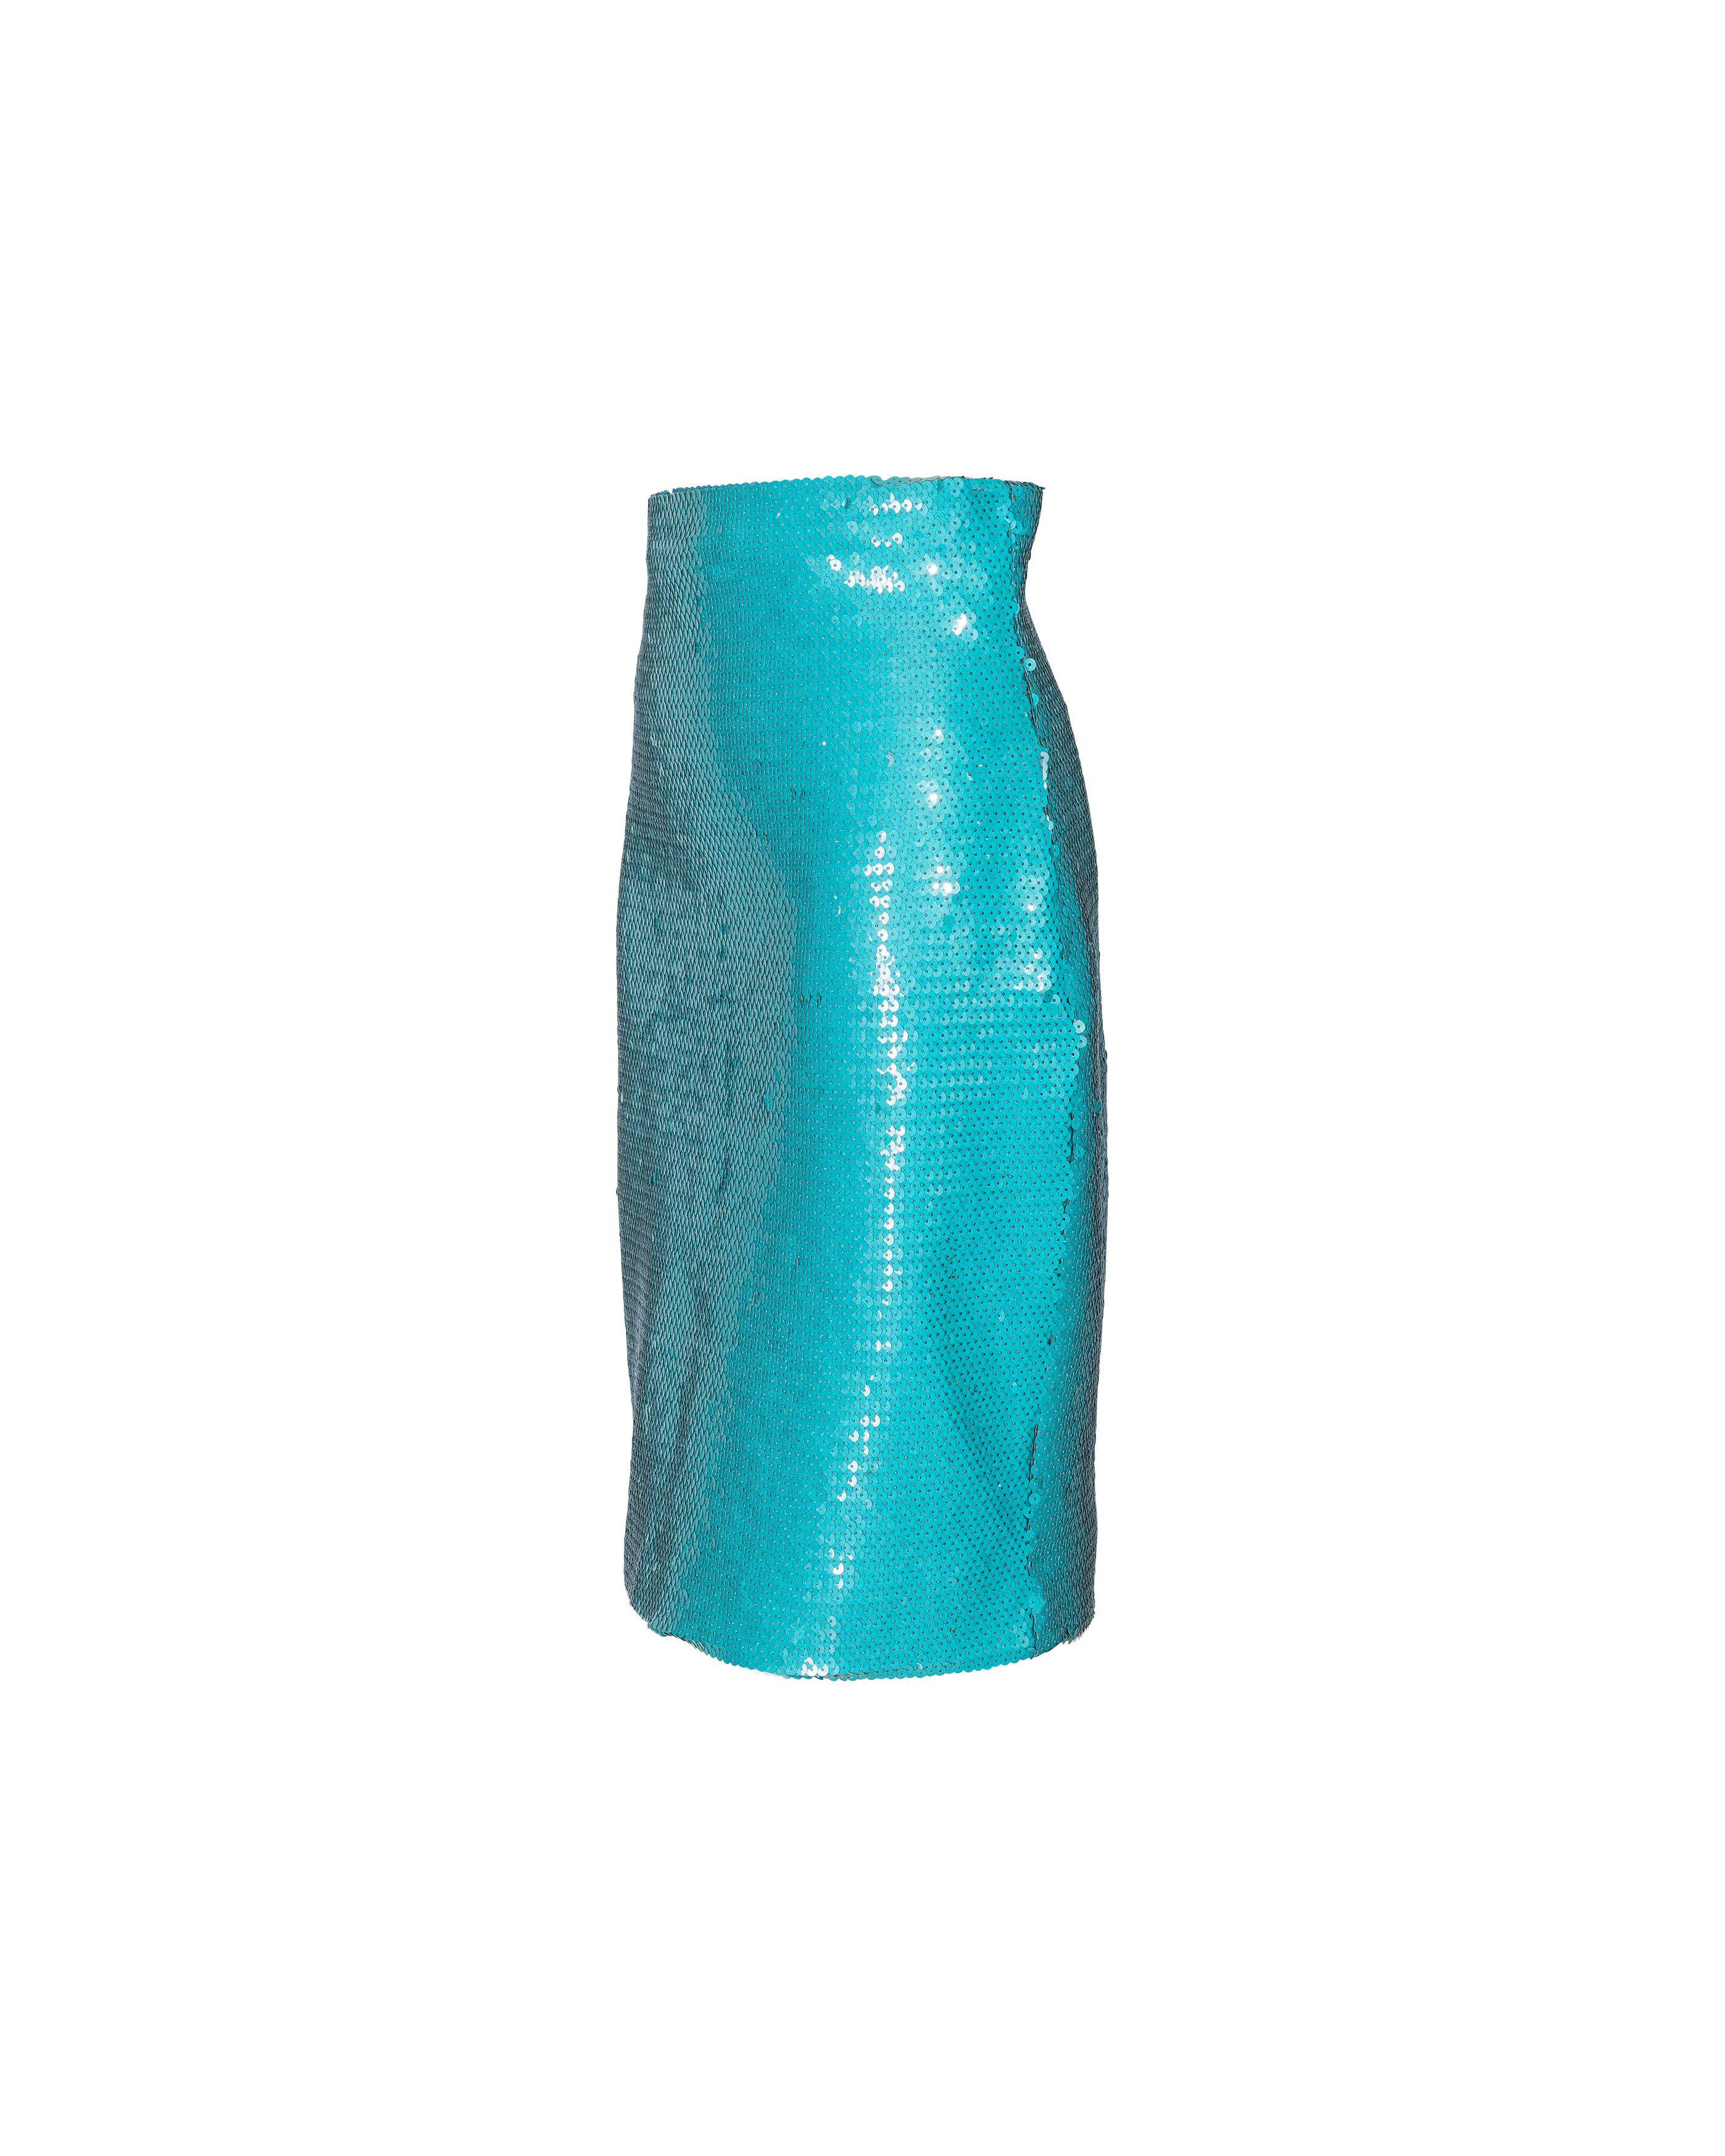 Stephen Sprouse türkisfarbener Rock mit Paillettenbesatz aus den 1980er Jahren. Verdeckter Reißverschluss hinten und kleiner Schlitz in der Mitte des Rückens. Die seitlichen Biesen und die breite Hüfte sorgen für eine subtile Silhouette. Inhalt des